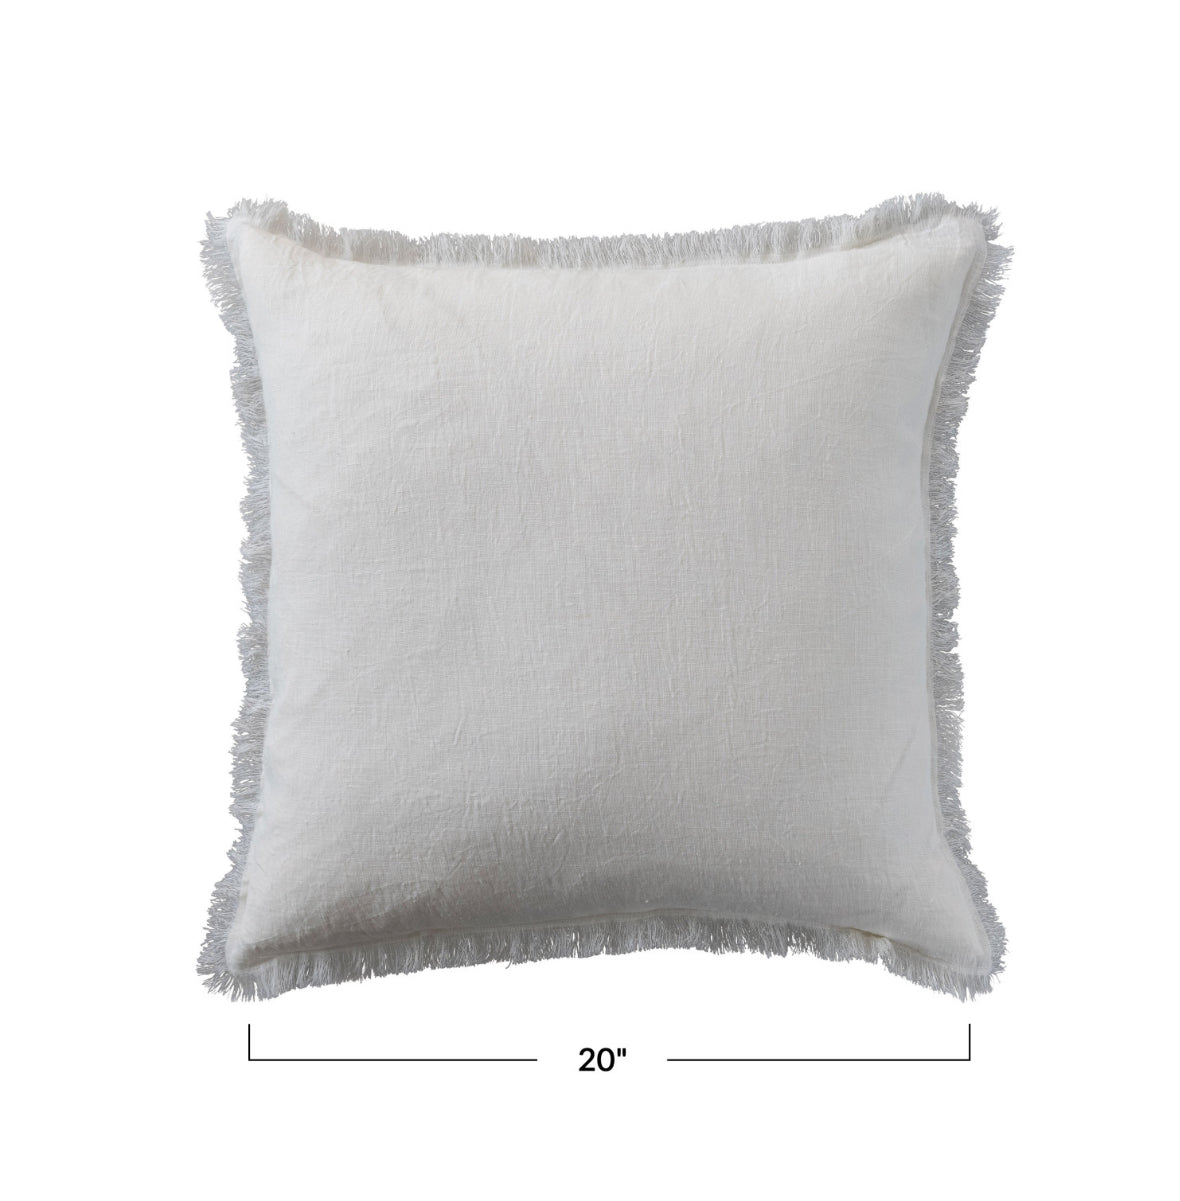 Stonewashed Linen Pillow with Fringe - Ivory